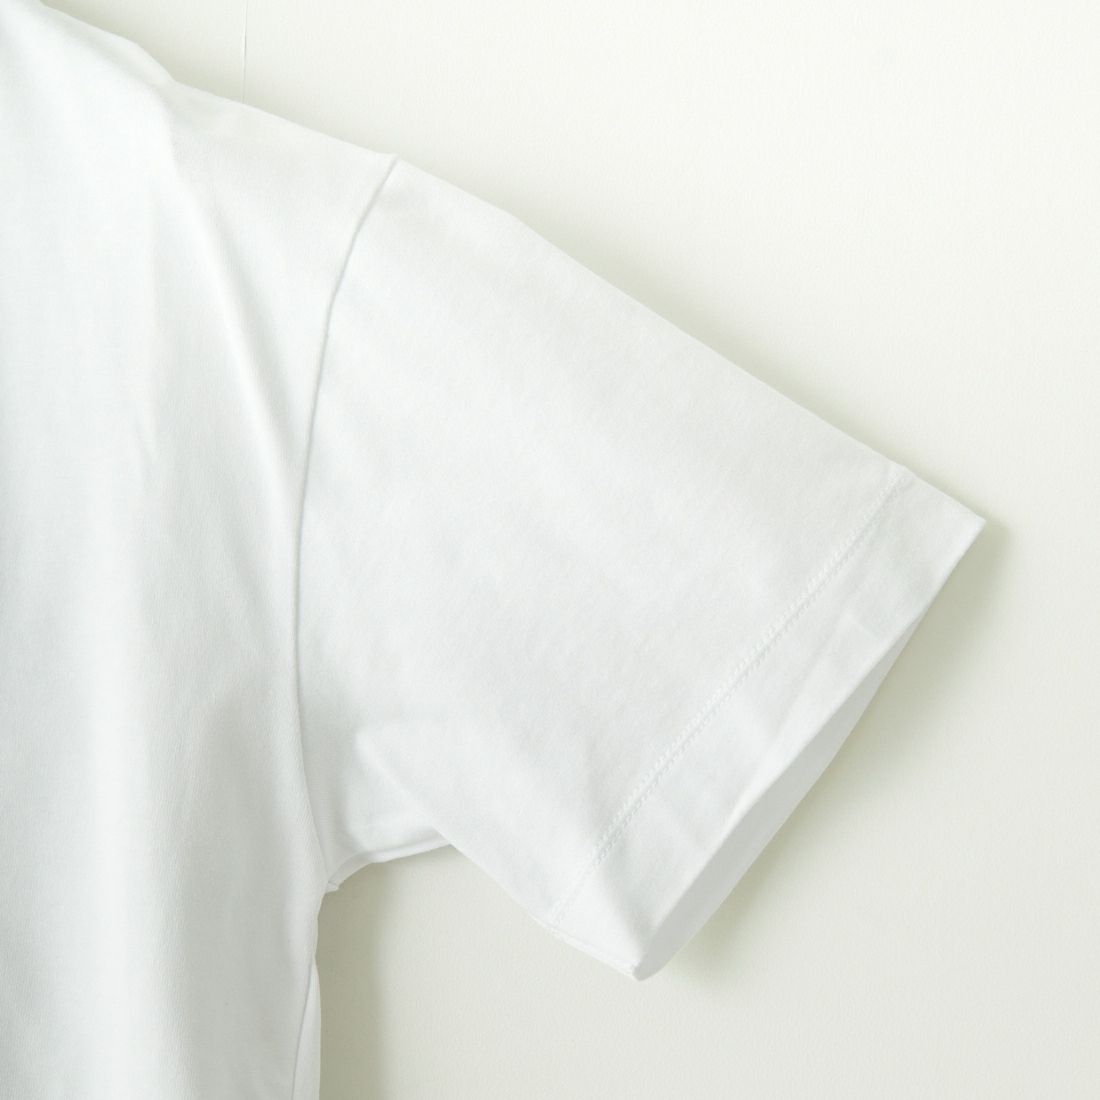 SLICK [スリック] レギュラーフィットプリントTシャツ FRUITS [5255857] 900 WHITE